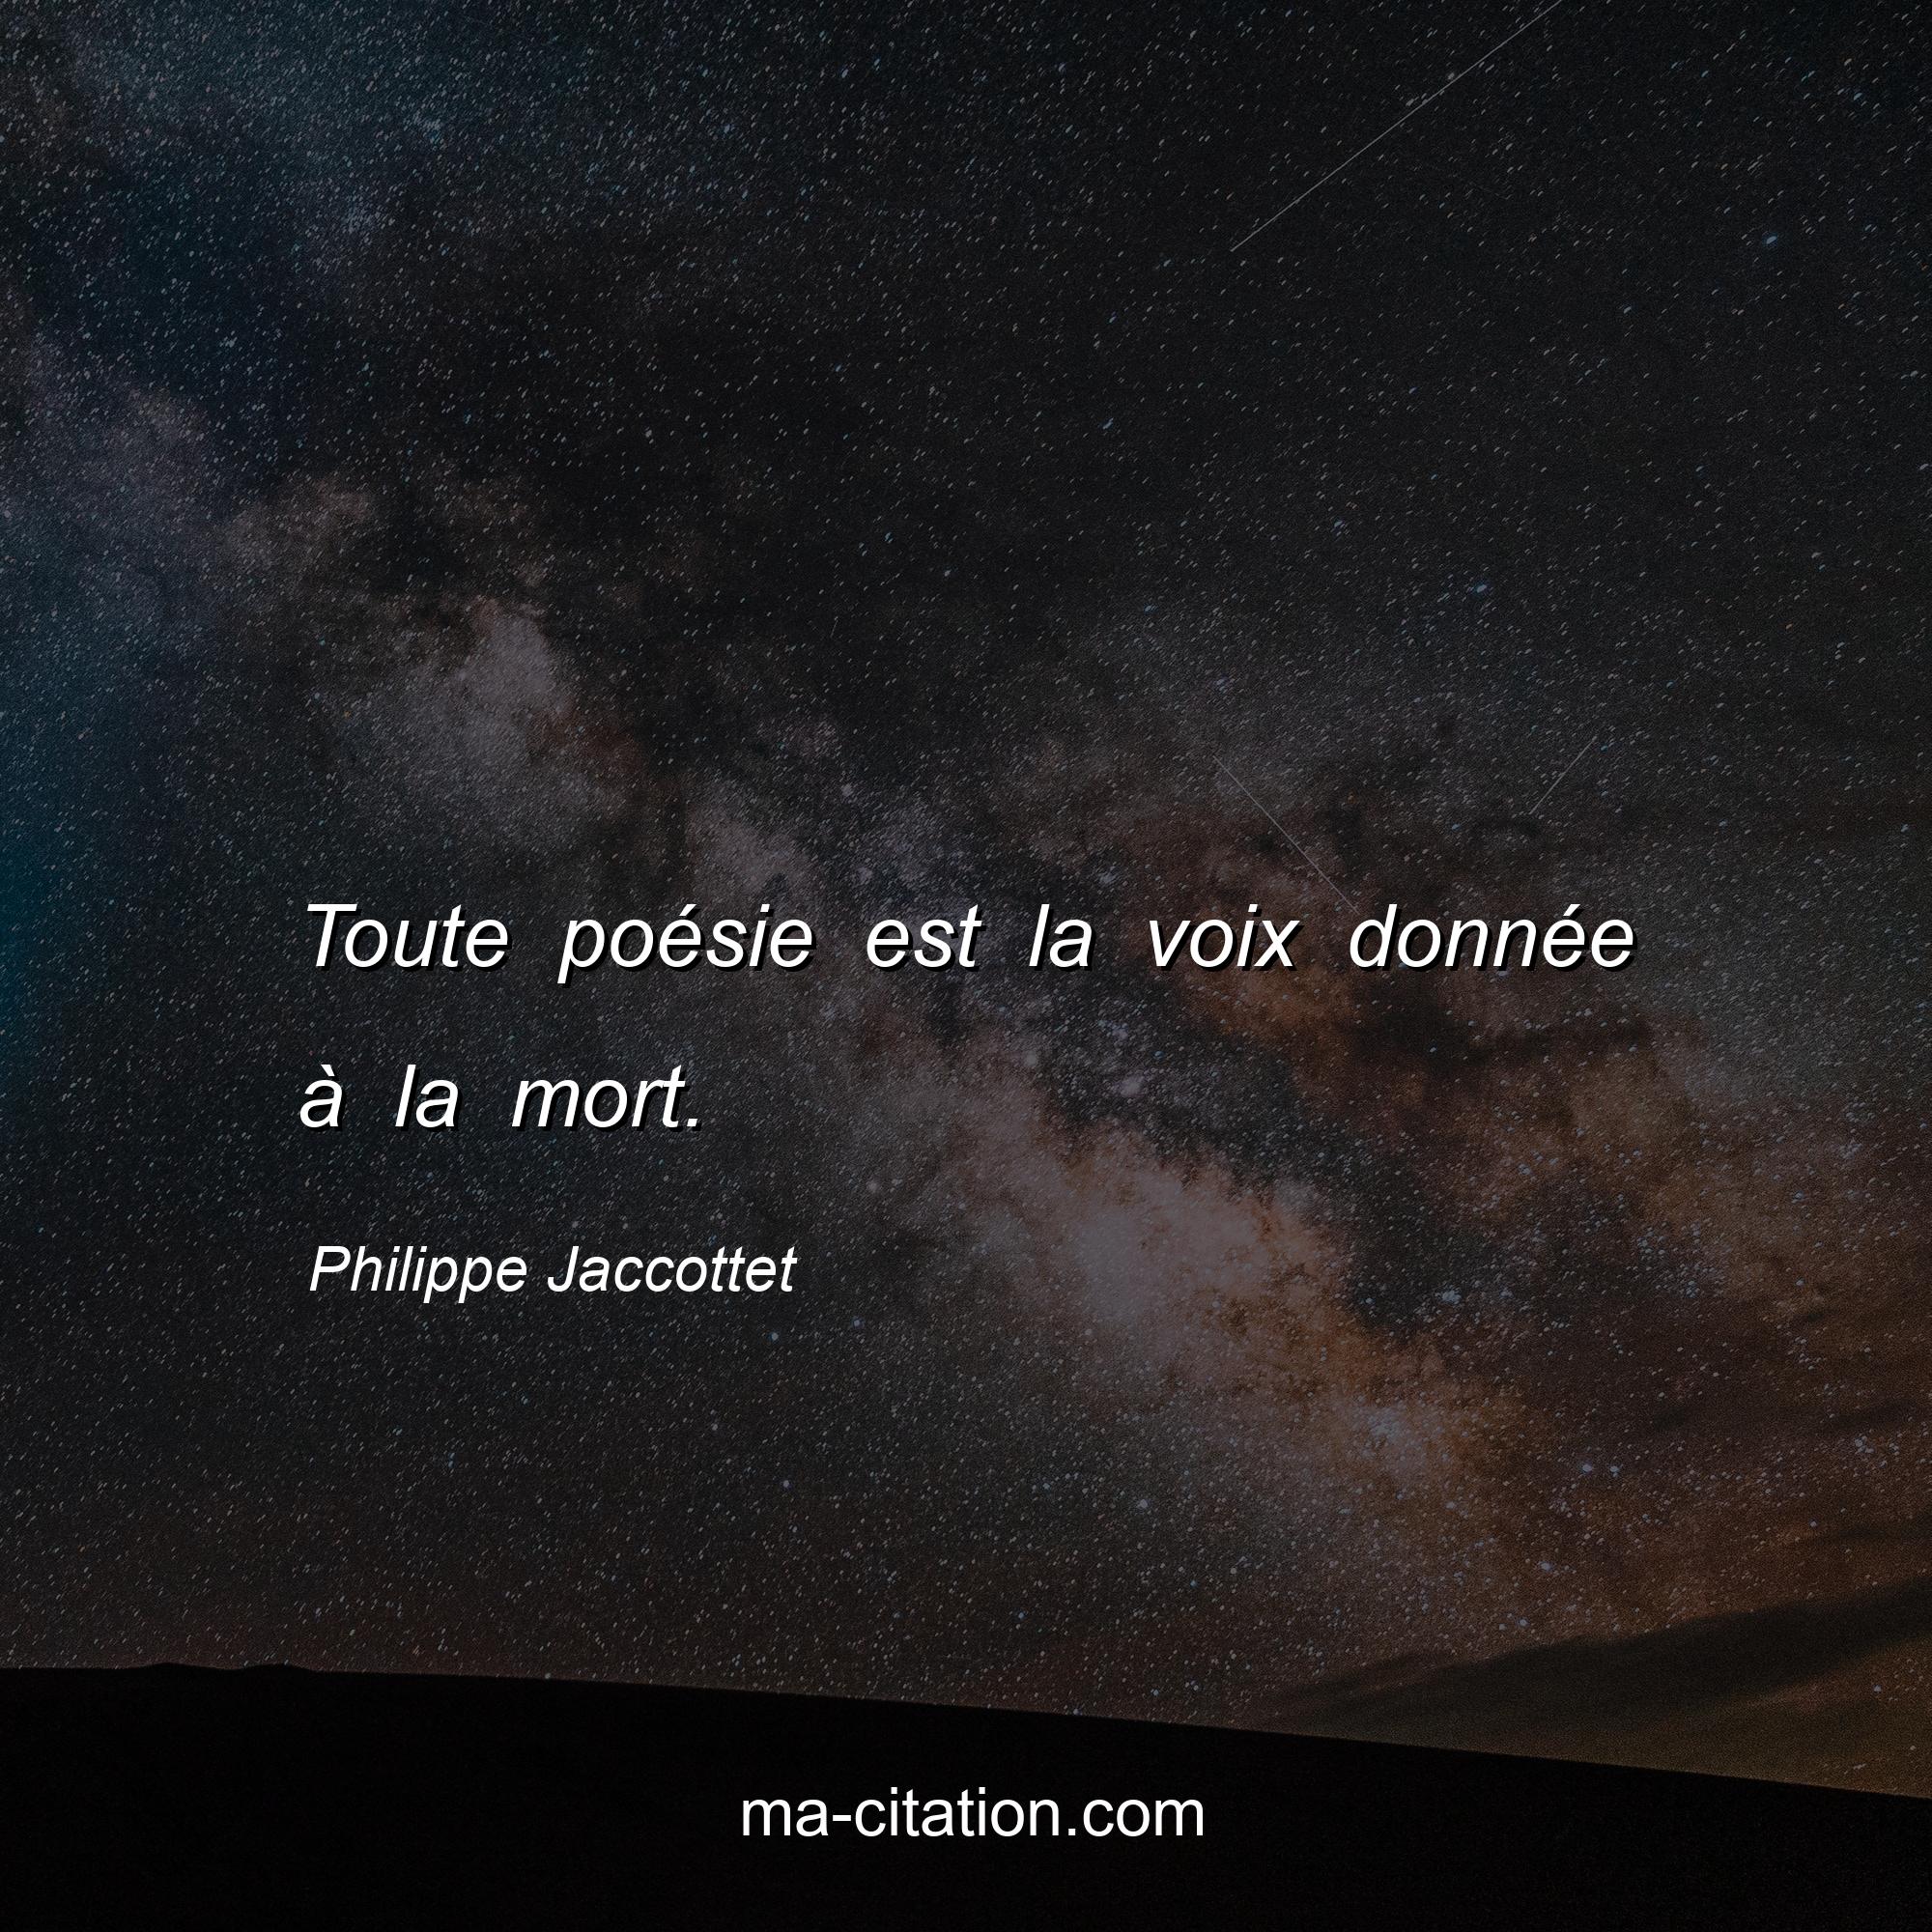 Philippe Jaccottet : Toute poésie est la voix donnée à la mort.